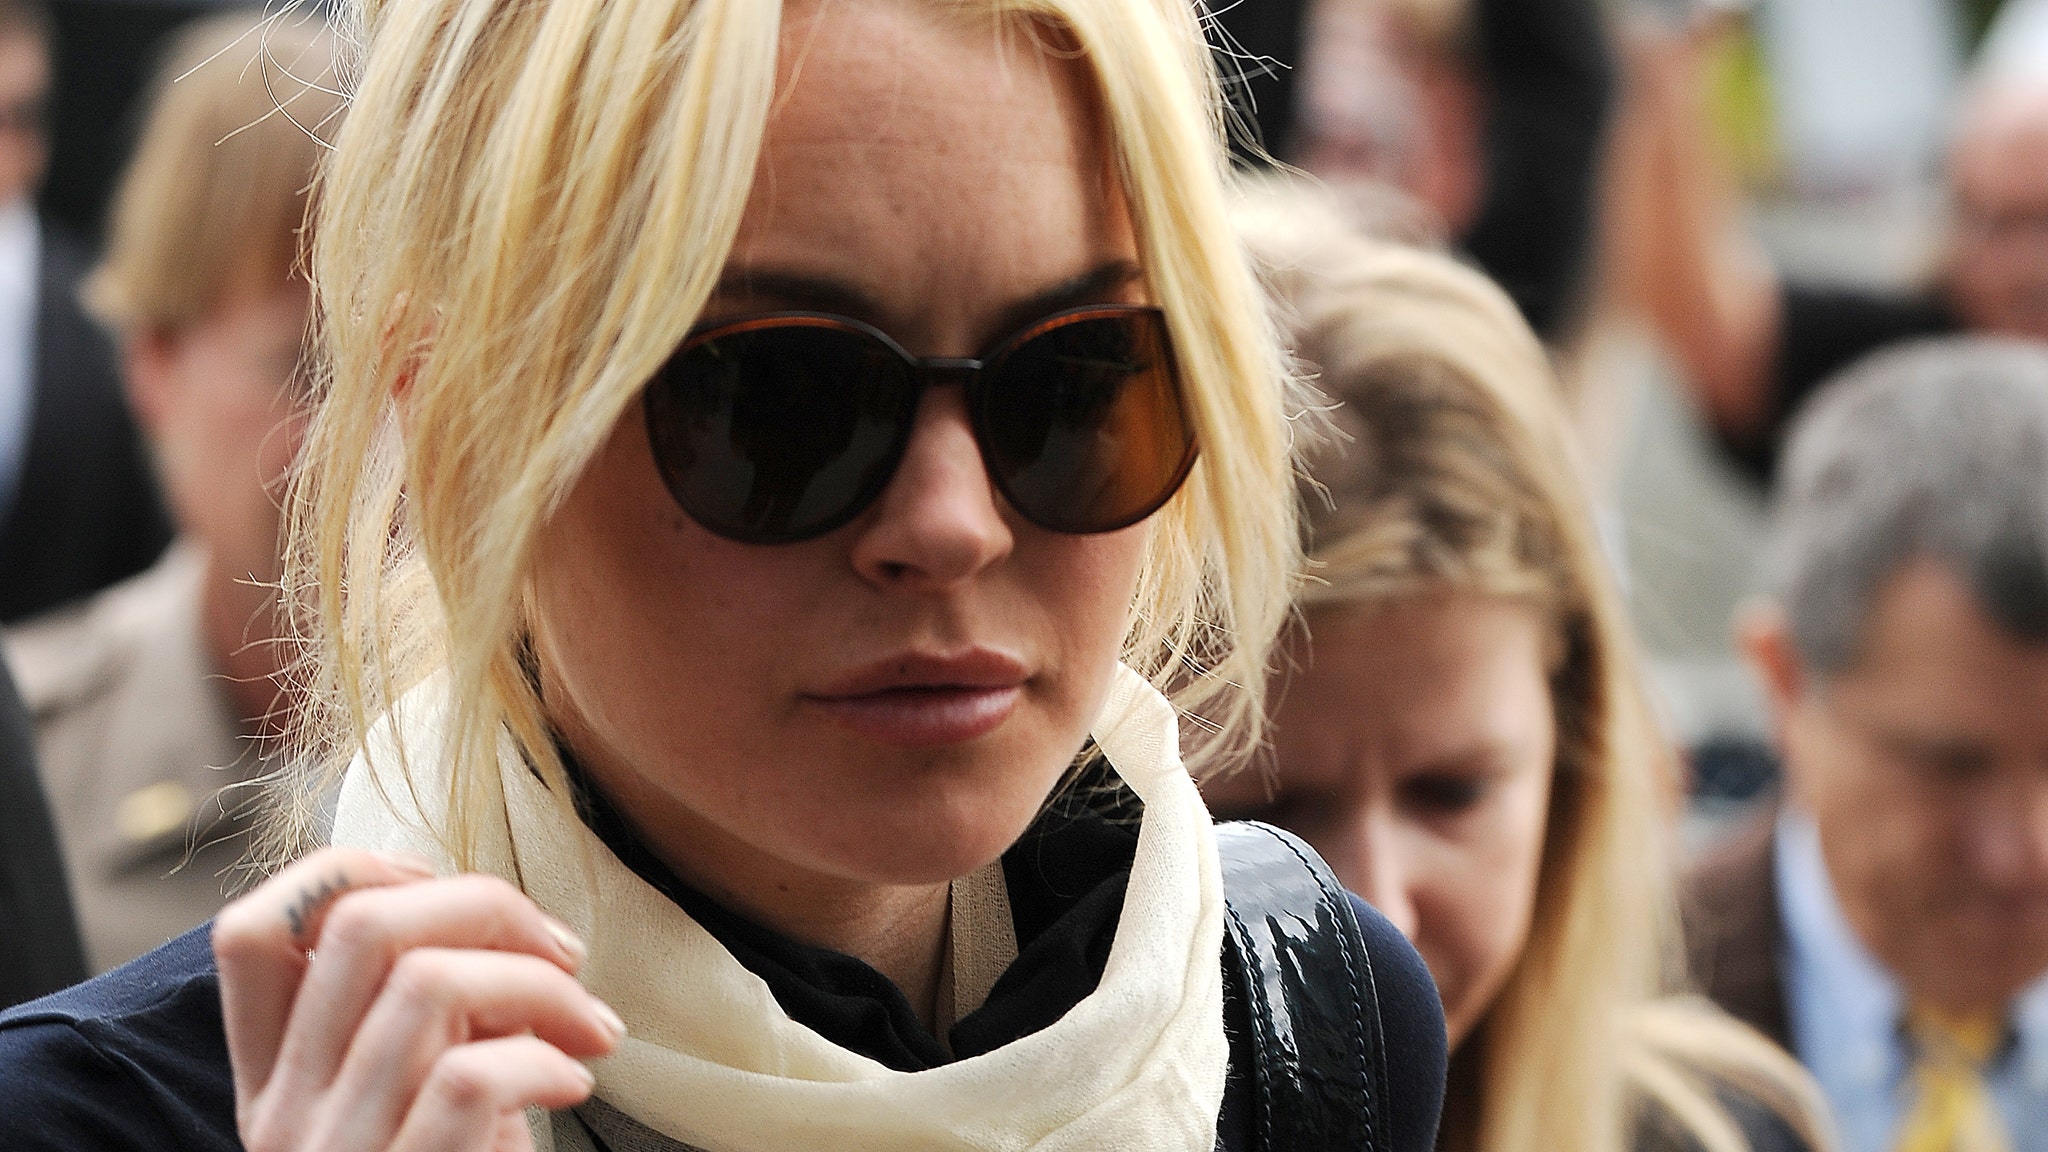 Lindsay Lohan's Courtroom Fashion